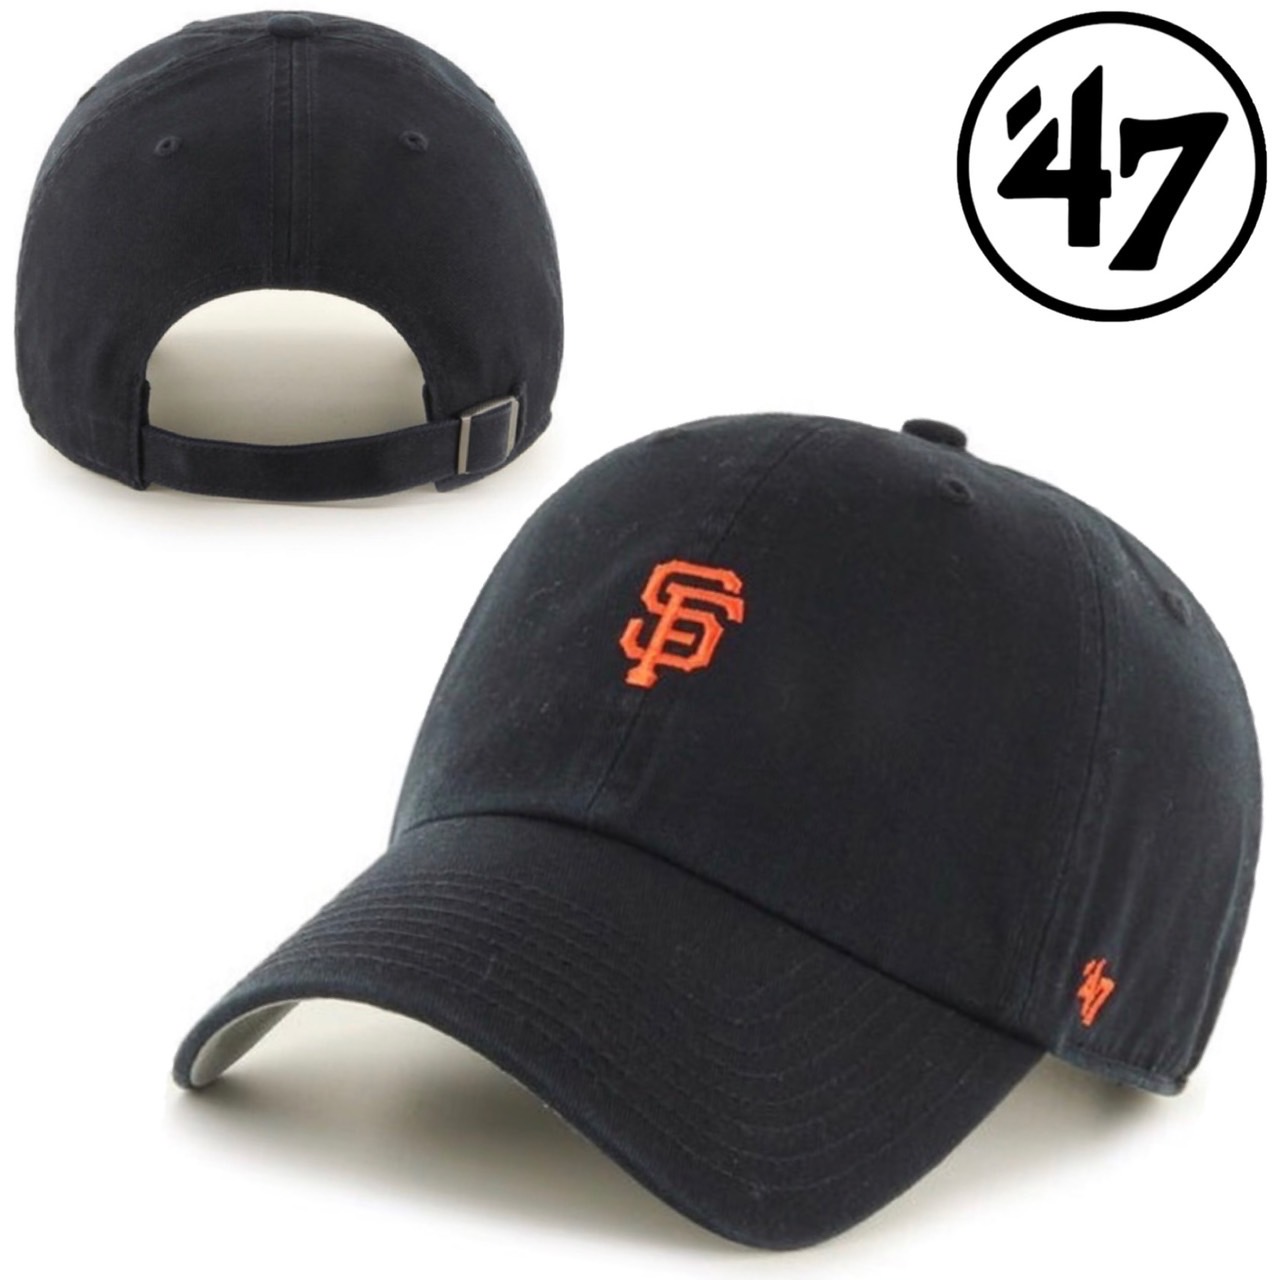 47 フォーティーセブン ブランド キャップ 帽子ミニロゴ LA ベース 